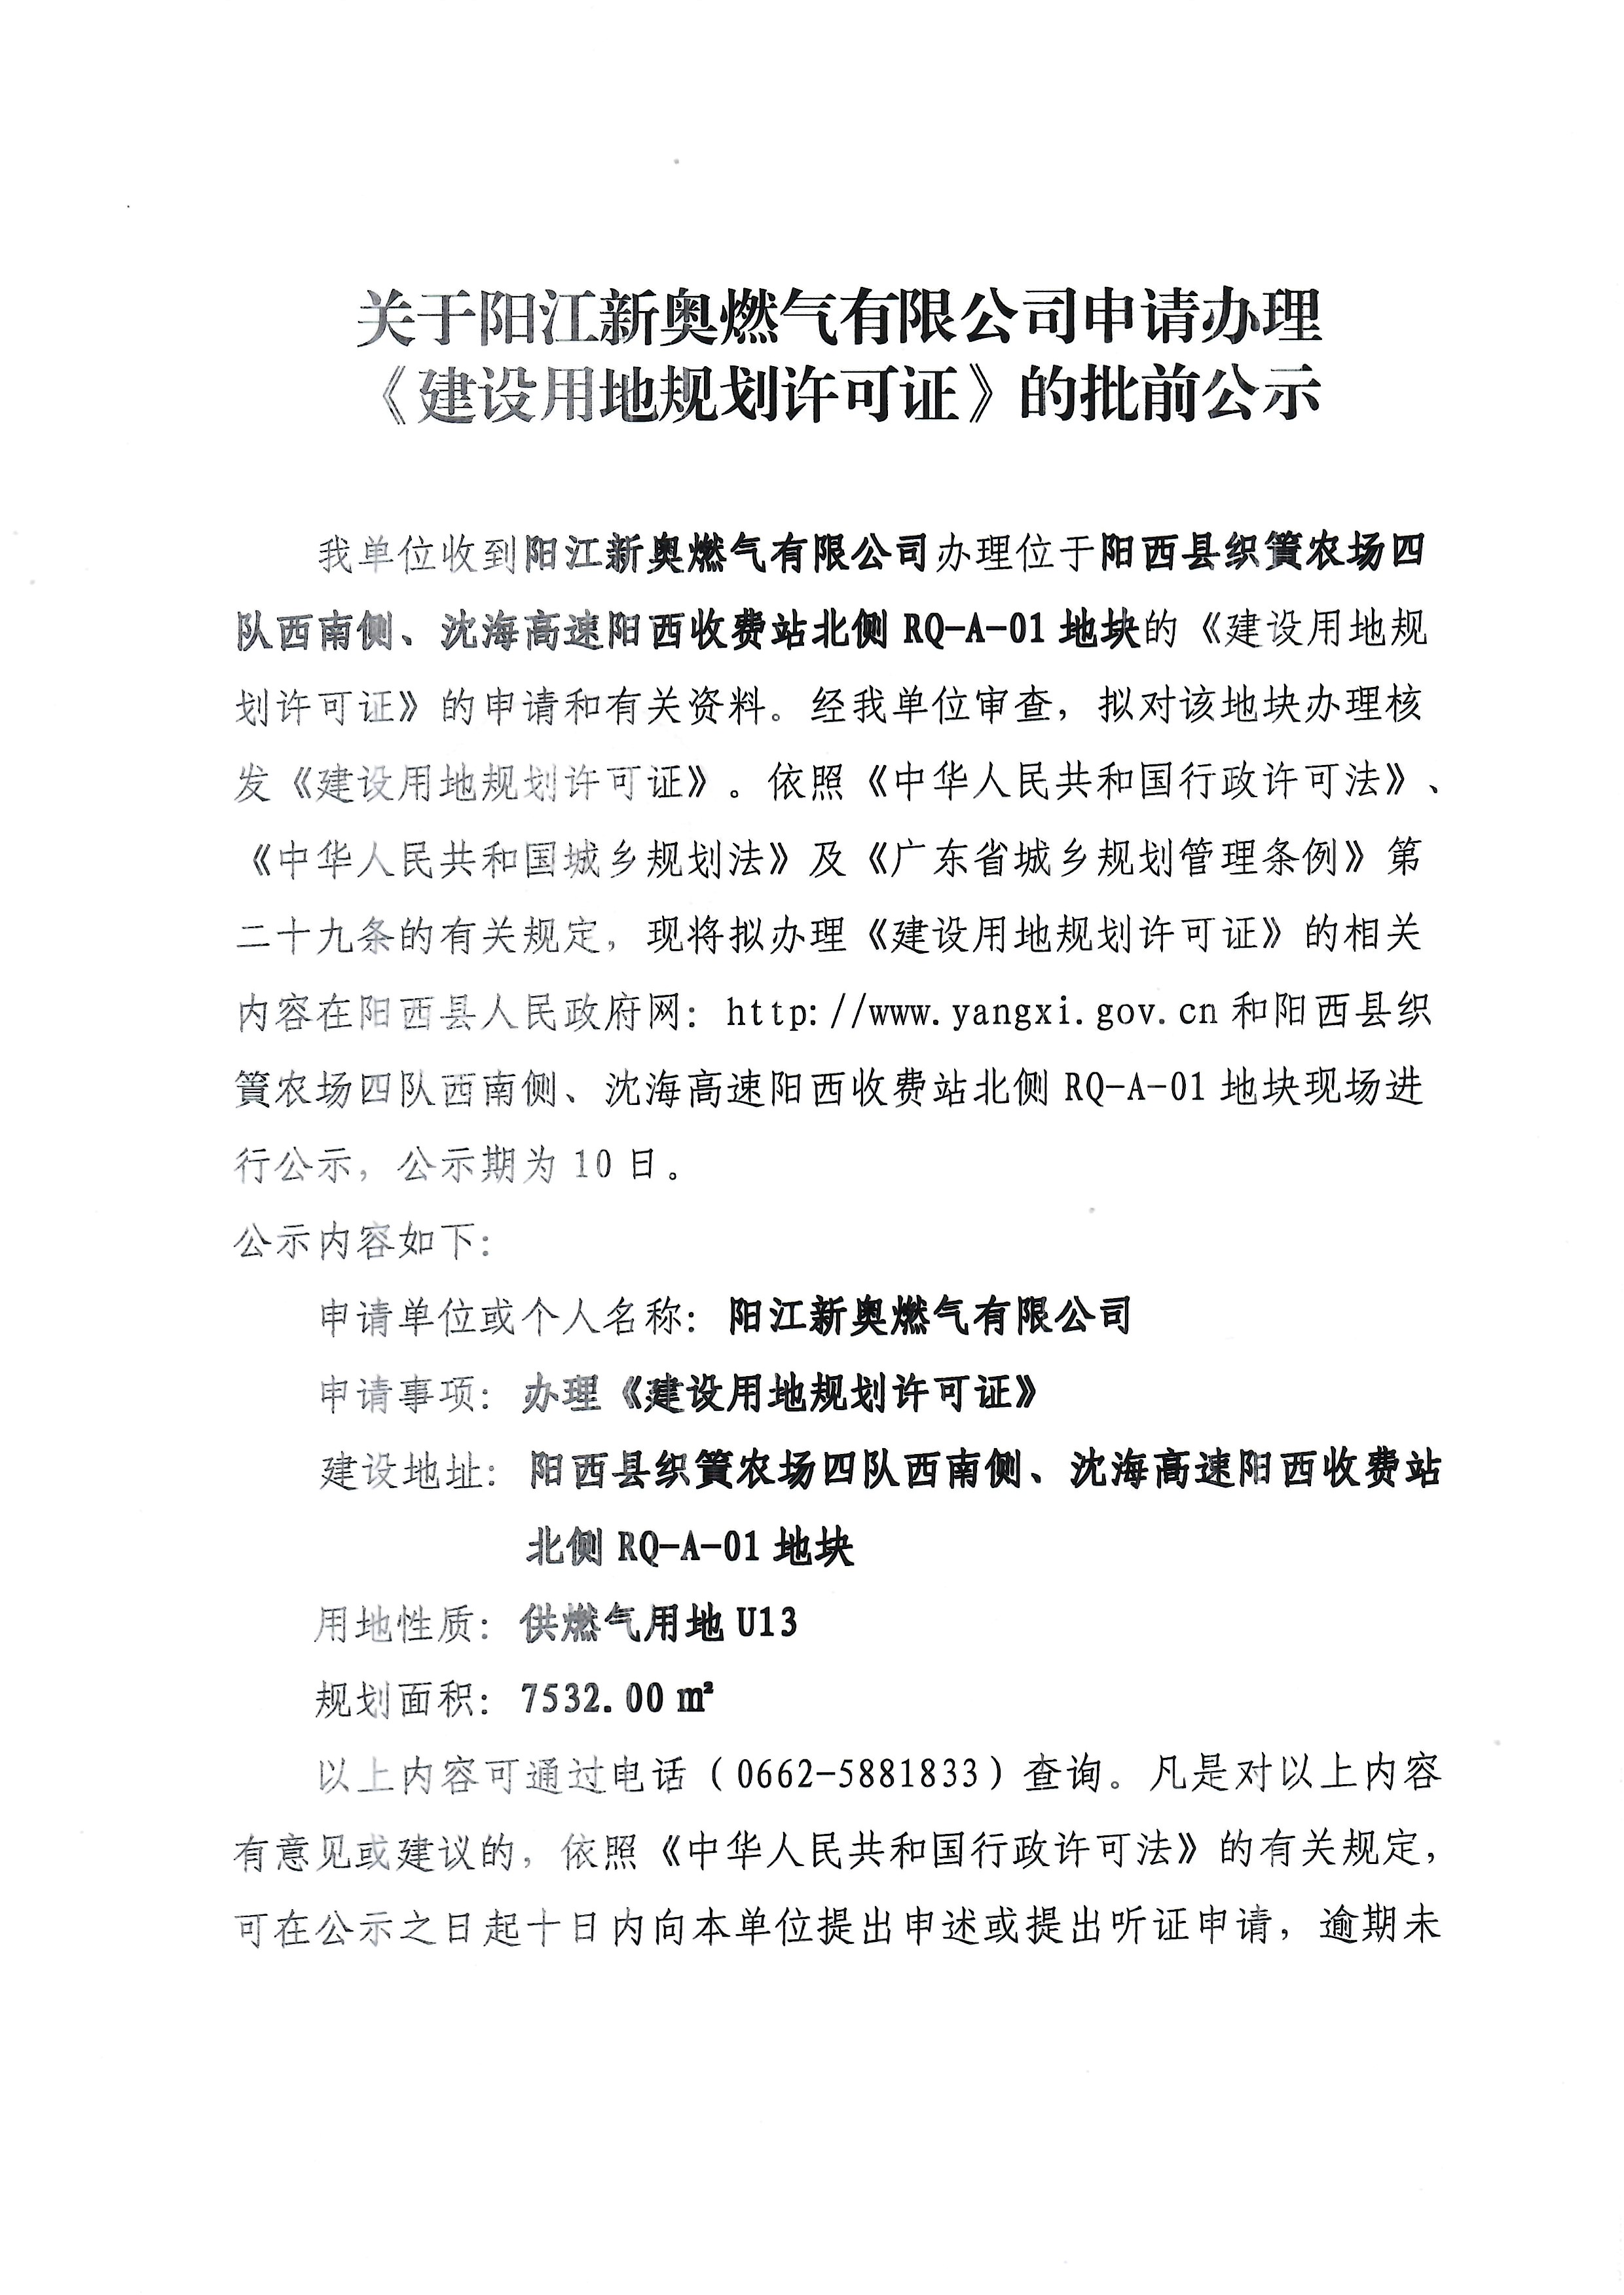 关于阳江新奥燃气有限公司申请办理《建设用地规划许可证》的批前公示1.jpg